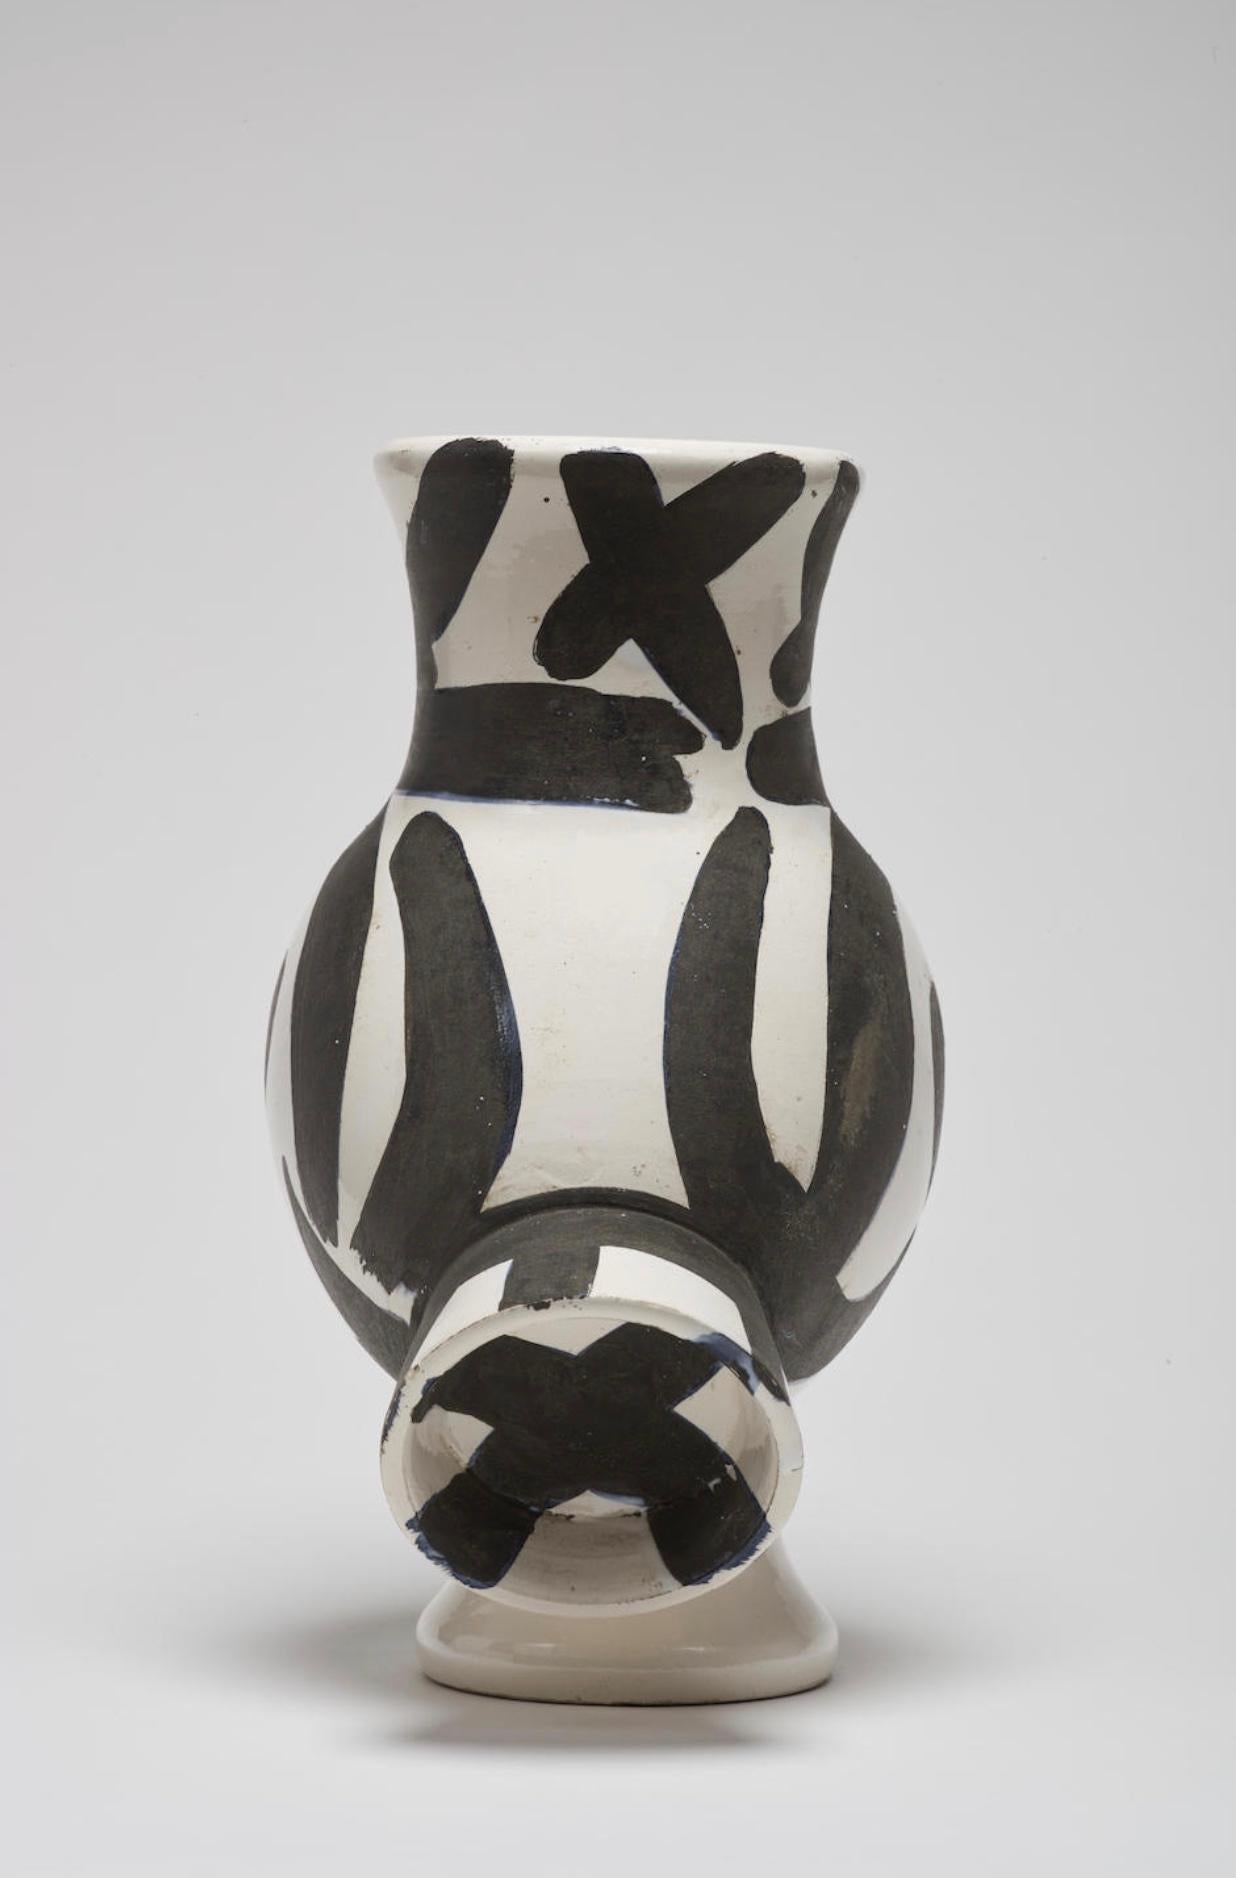 Chouette, Picasso, Pichet, Design, 1950, Céramique, Noir et blanc, Animal - Après-guerre Sculpture par Pablo Picasso